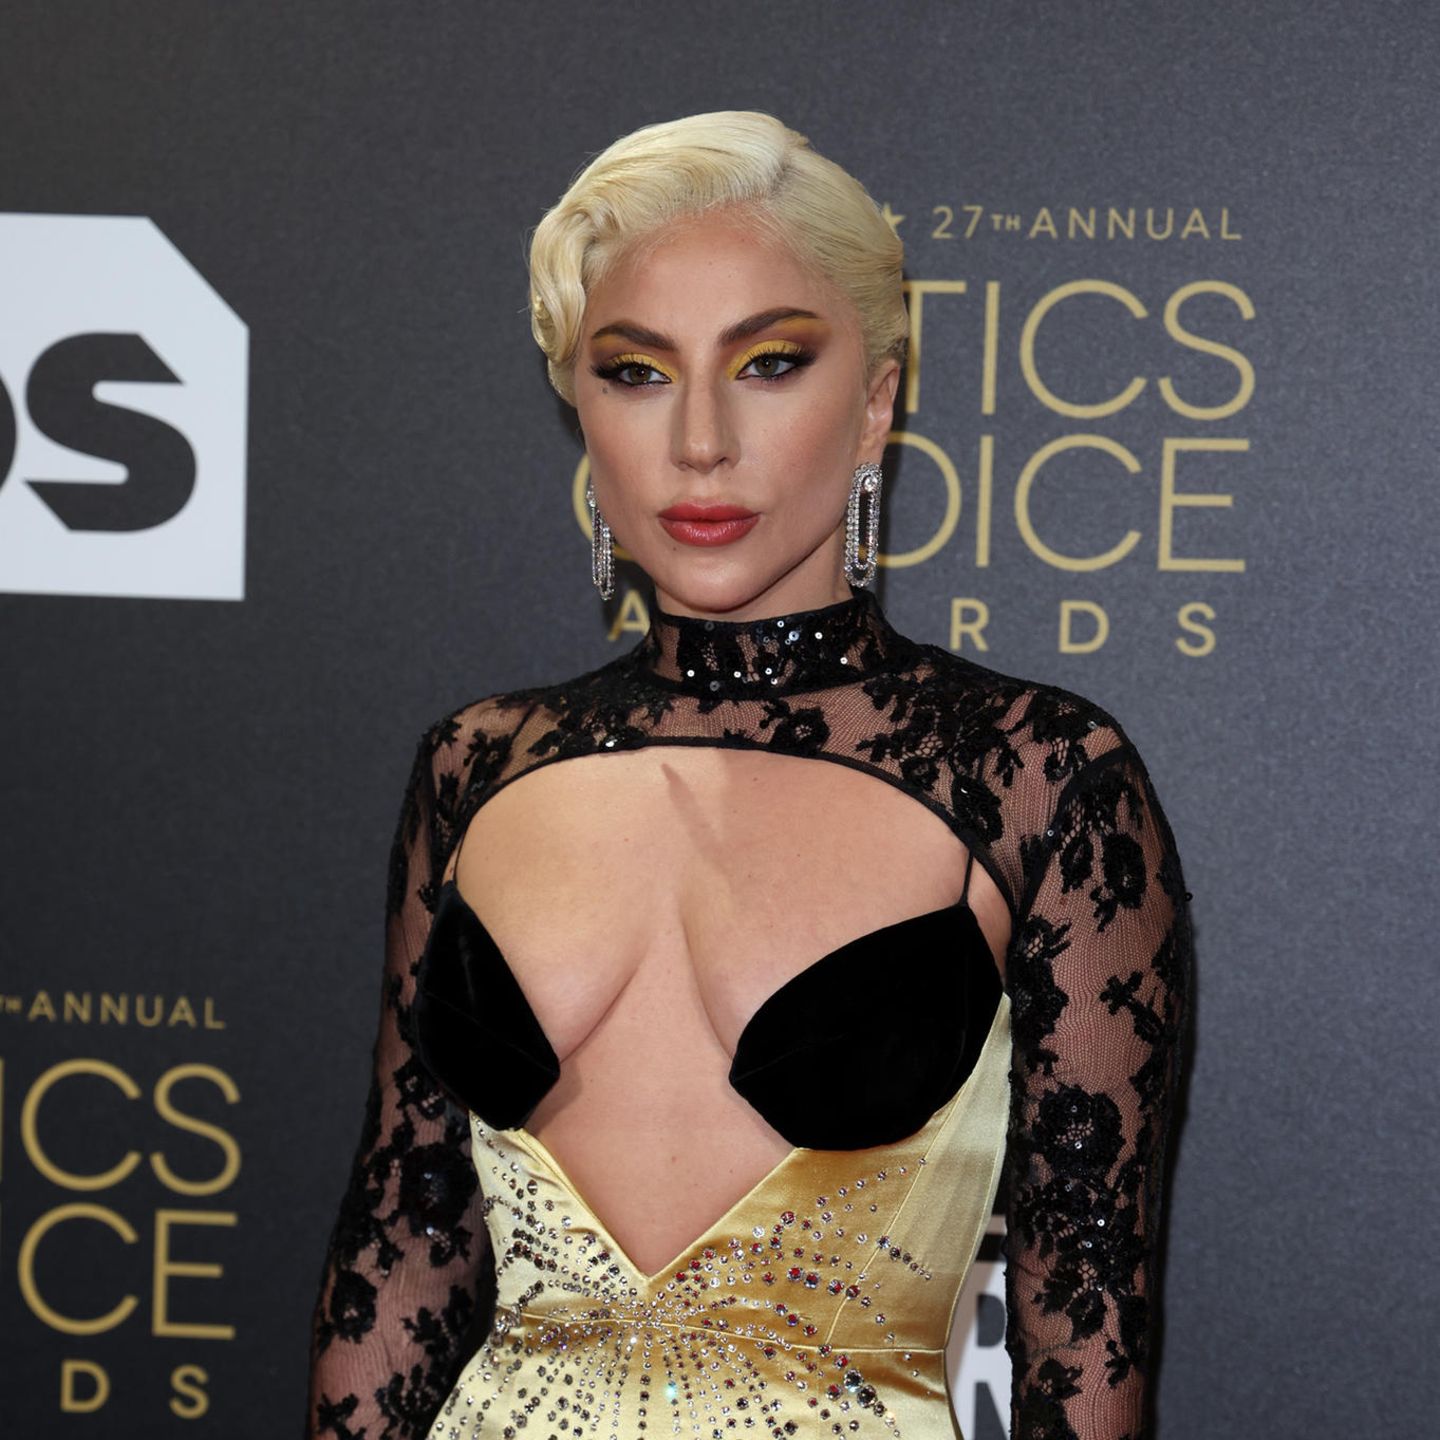 Mit Cat-Eyes in Gelbtönen und großen Statement-Ohrringen zeigt Lady Gaga einmal mehr wie viel Glamour in ihr steckt. Ihr aufregendes Make-Up wird durch ihr Outfit in den selben Tönen und mit glitzernden Pailletten und Strasssteinen perfekt aufgegriffen.